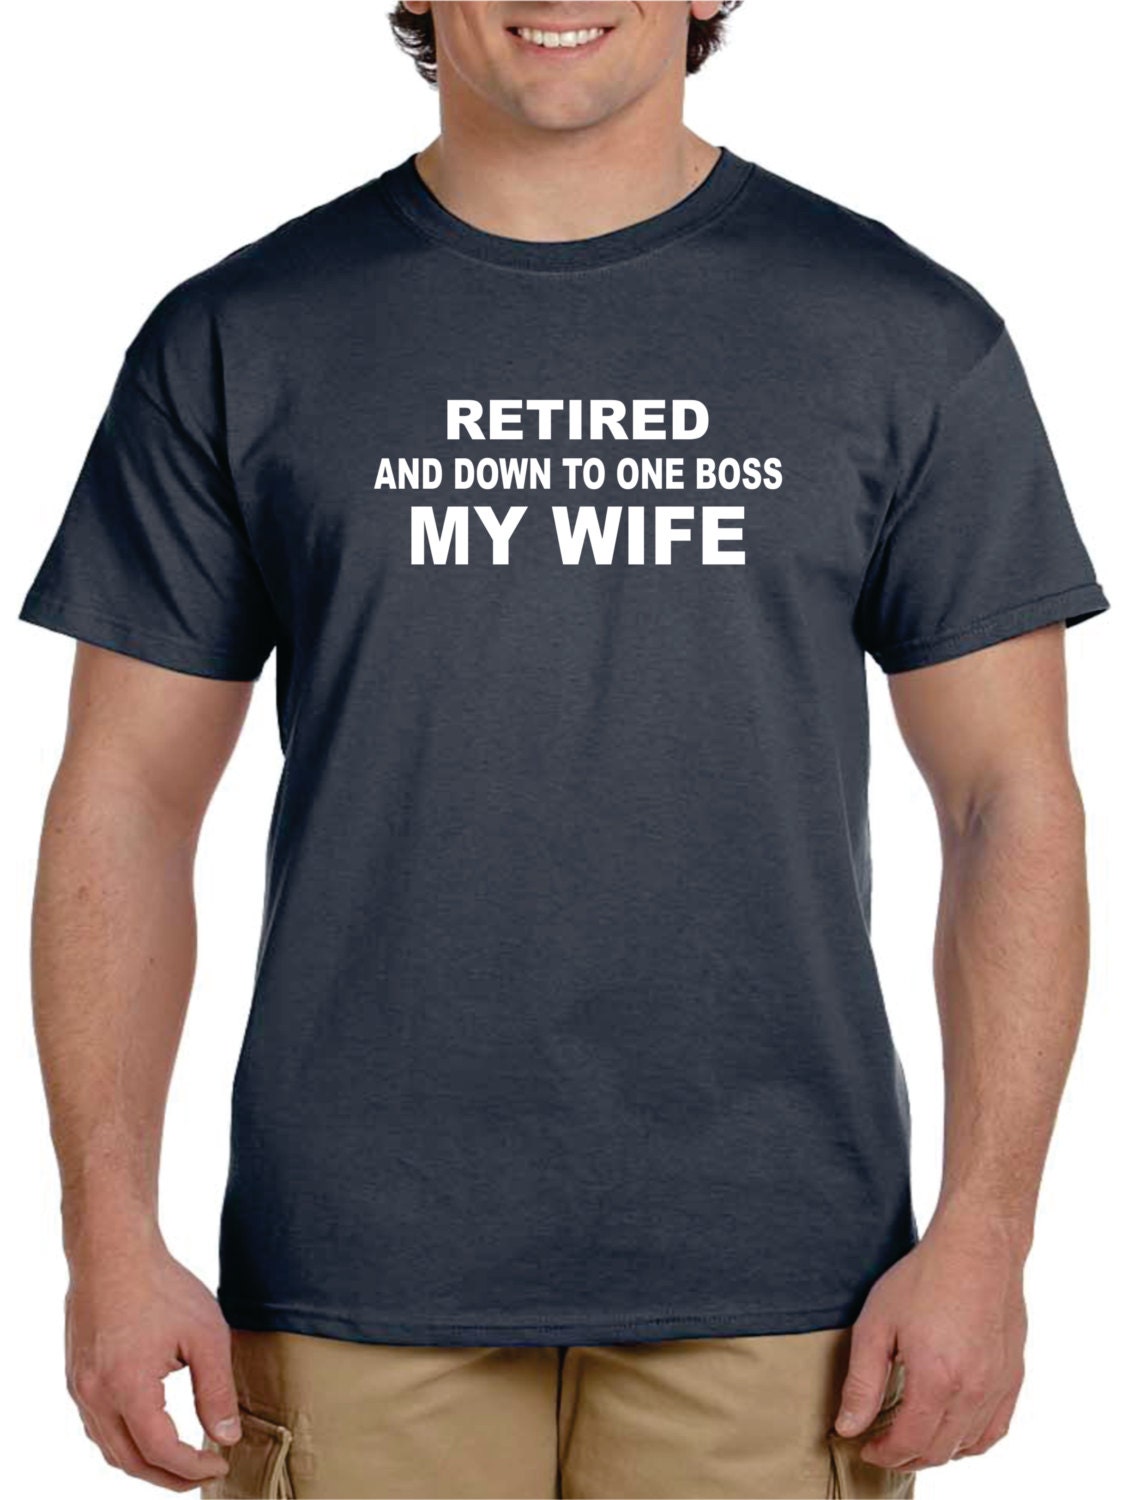 Retirement gift ideas for men 